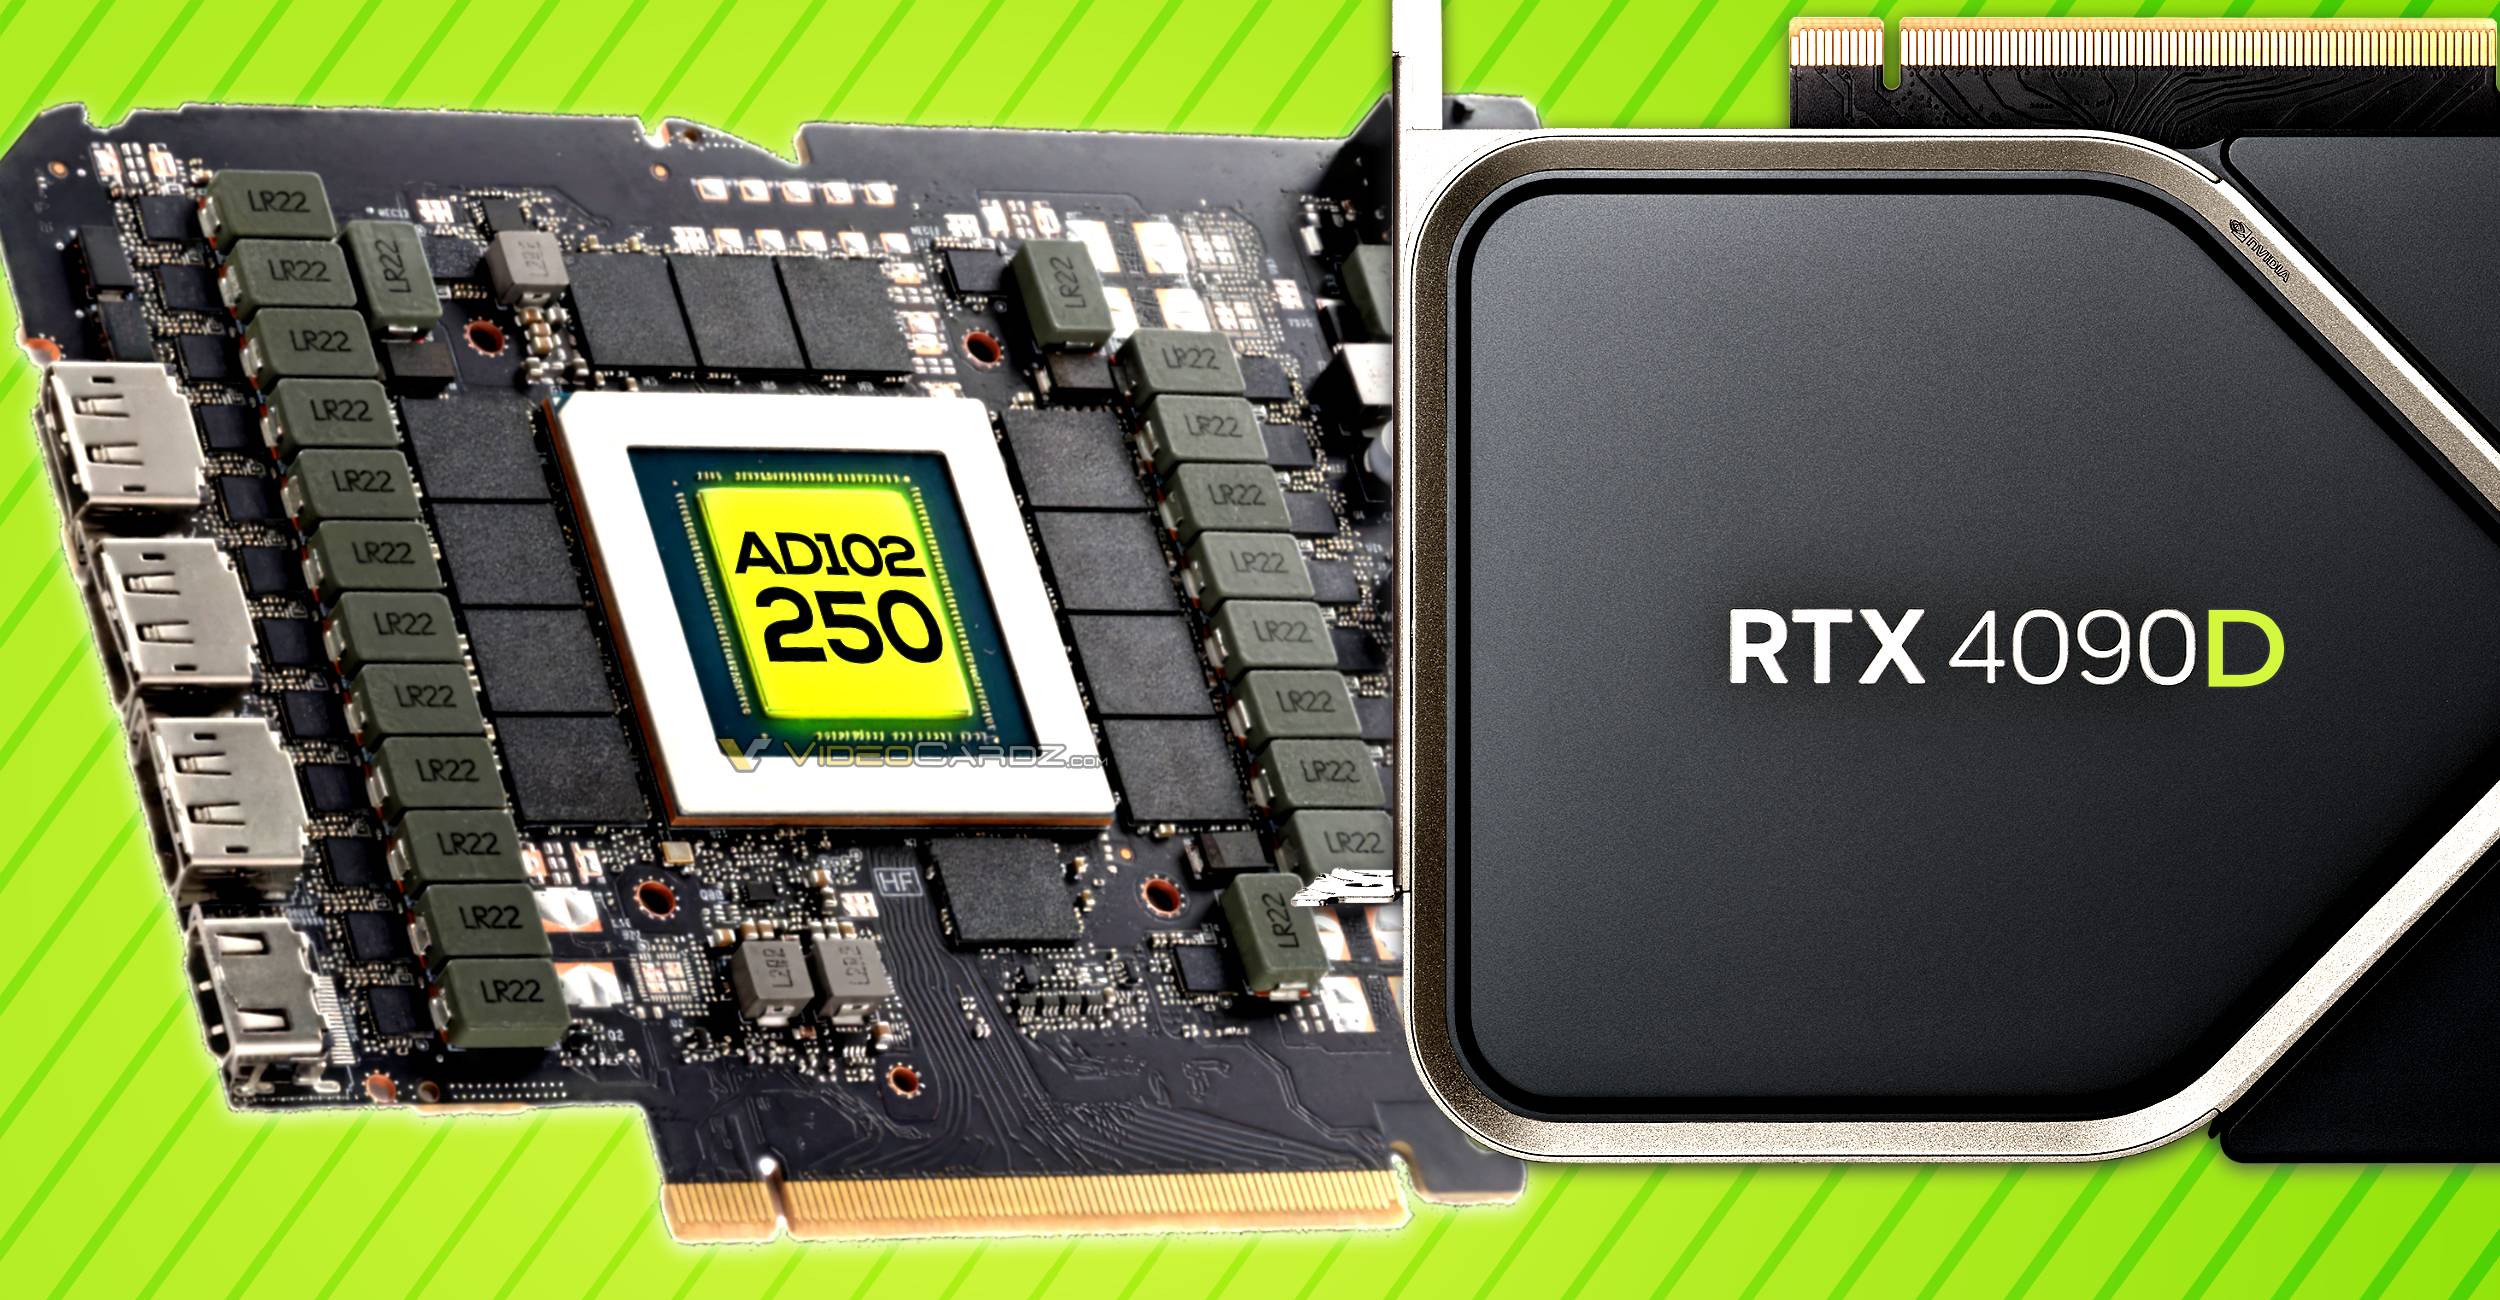 NVIDIA GeForce RTX 4090D para China contará con GPU AD102-250